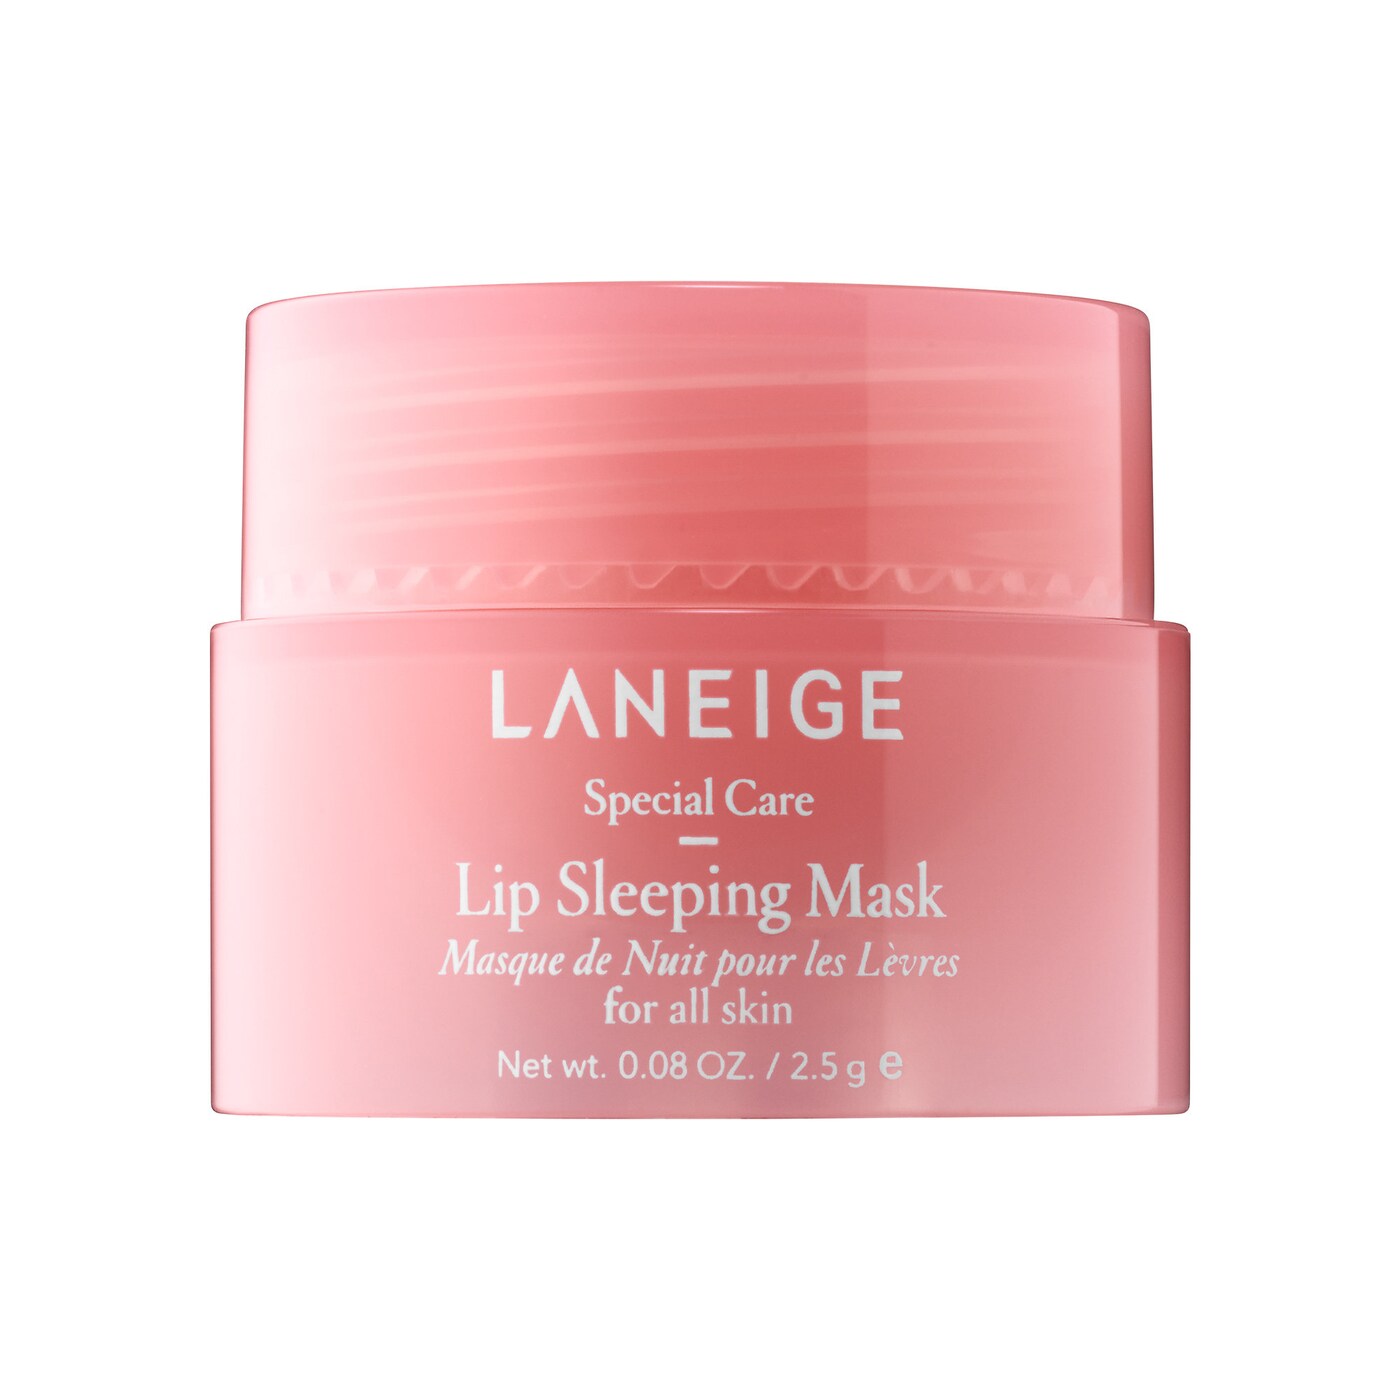 Lip Sleeping Mask trial size - 0.08 oz/ 2.5g